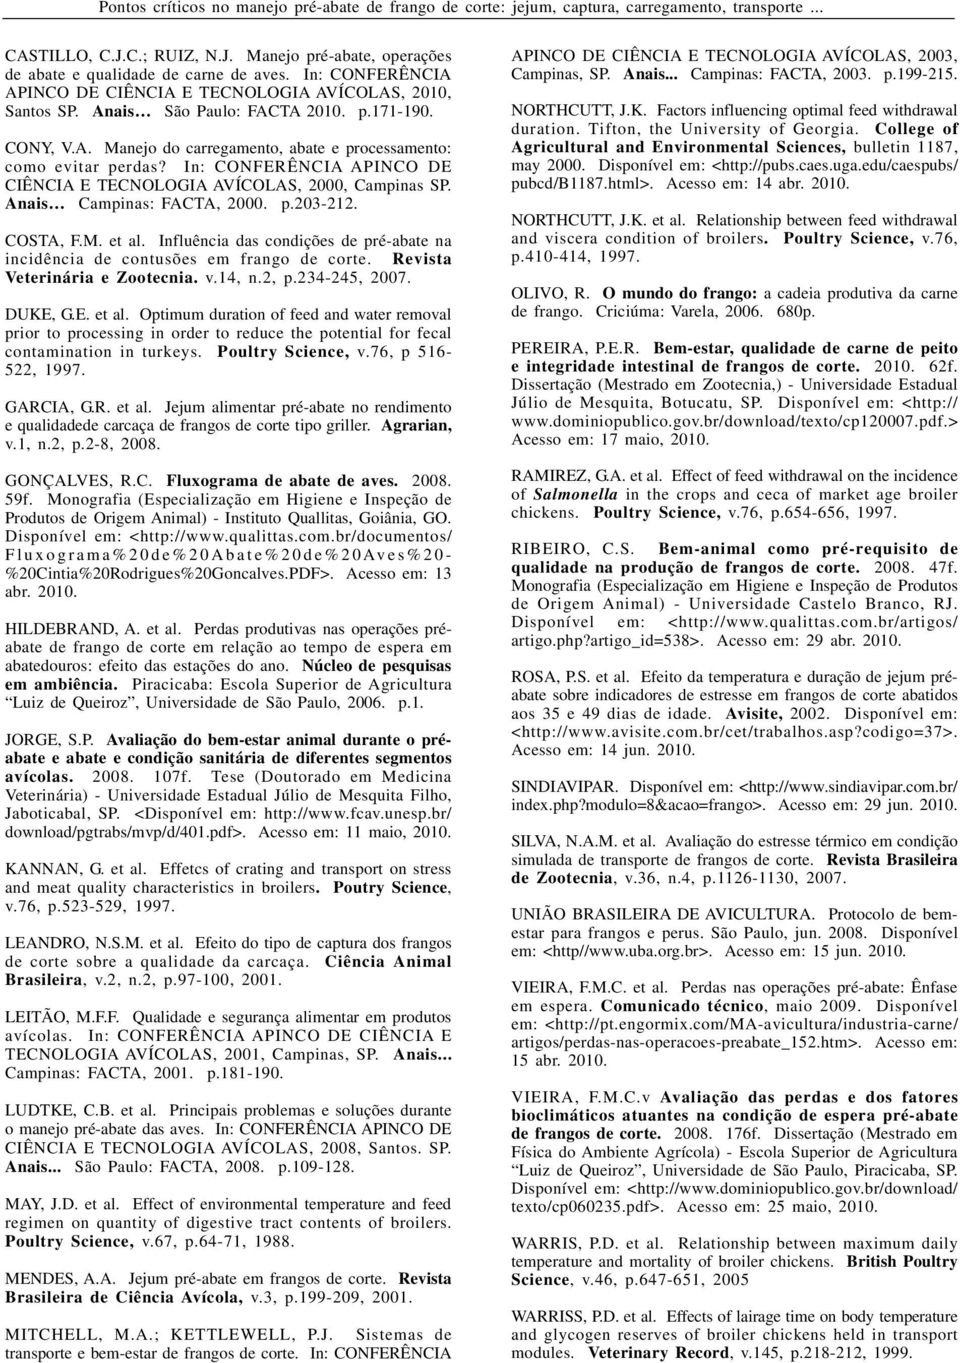 In: CONFERÊNCIA APINCO DE CIÊNCIA E TECNOLOGIA AVÍCOLAS, 2000, Campinas SP. Anais Campinas: FACTA, 2000. p.203-212. COSTA, F.M. et al.